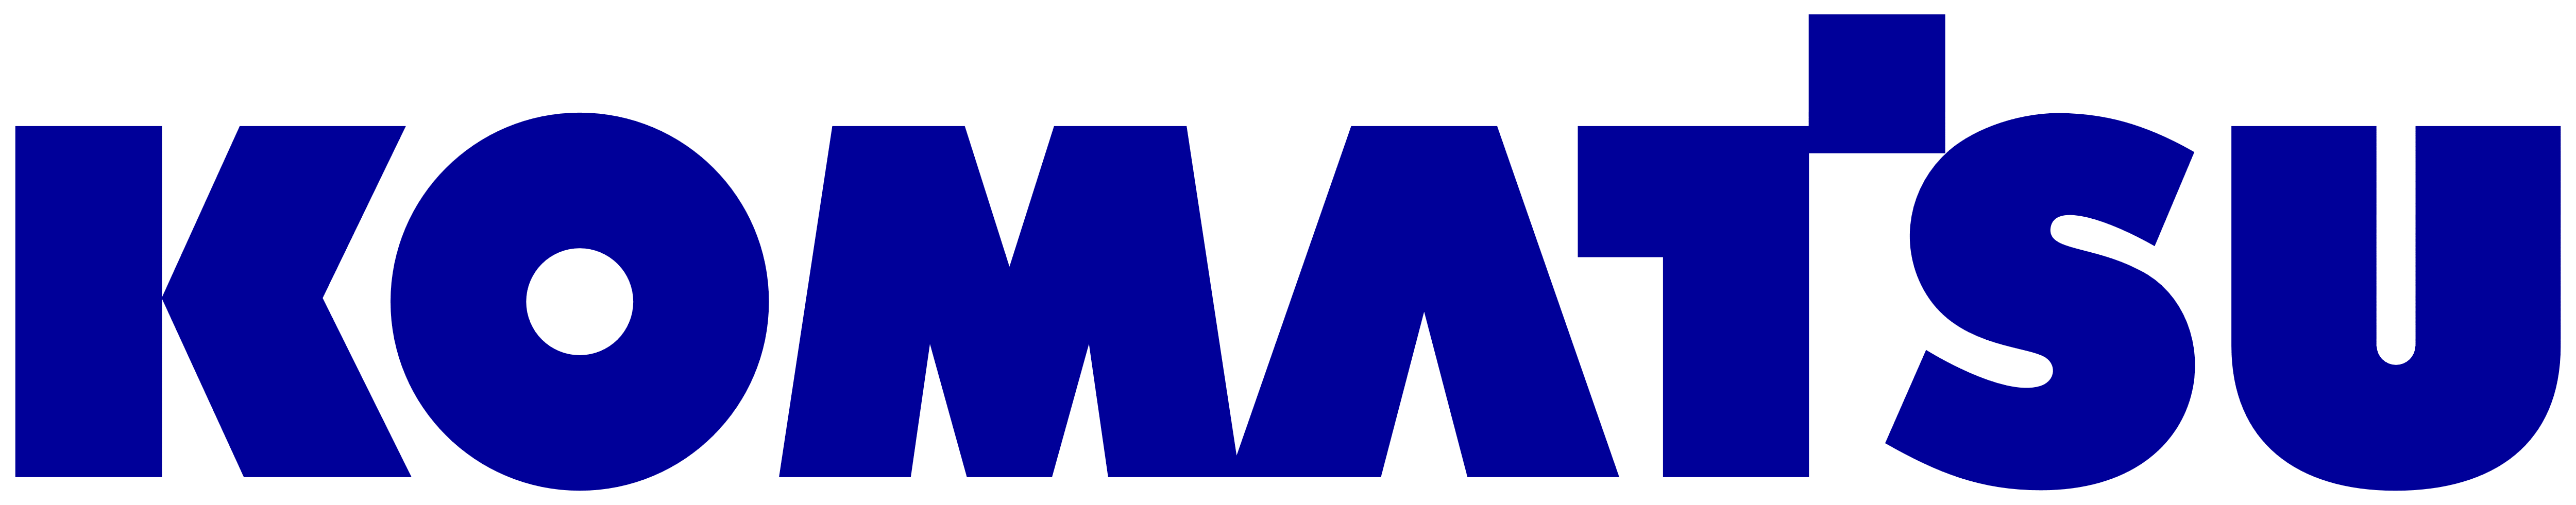 коматсу лого